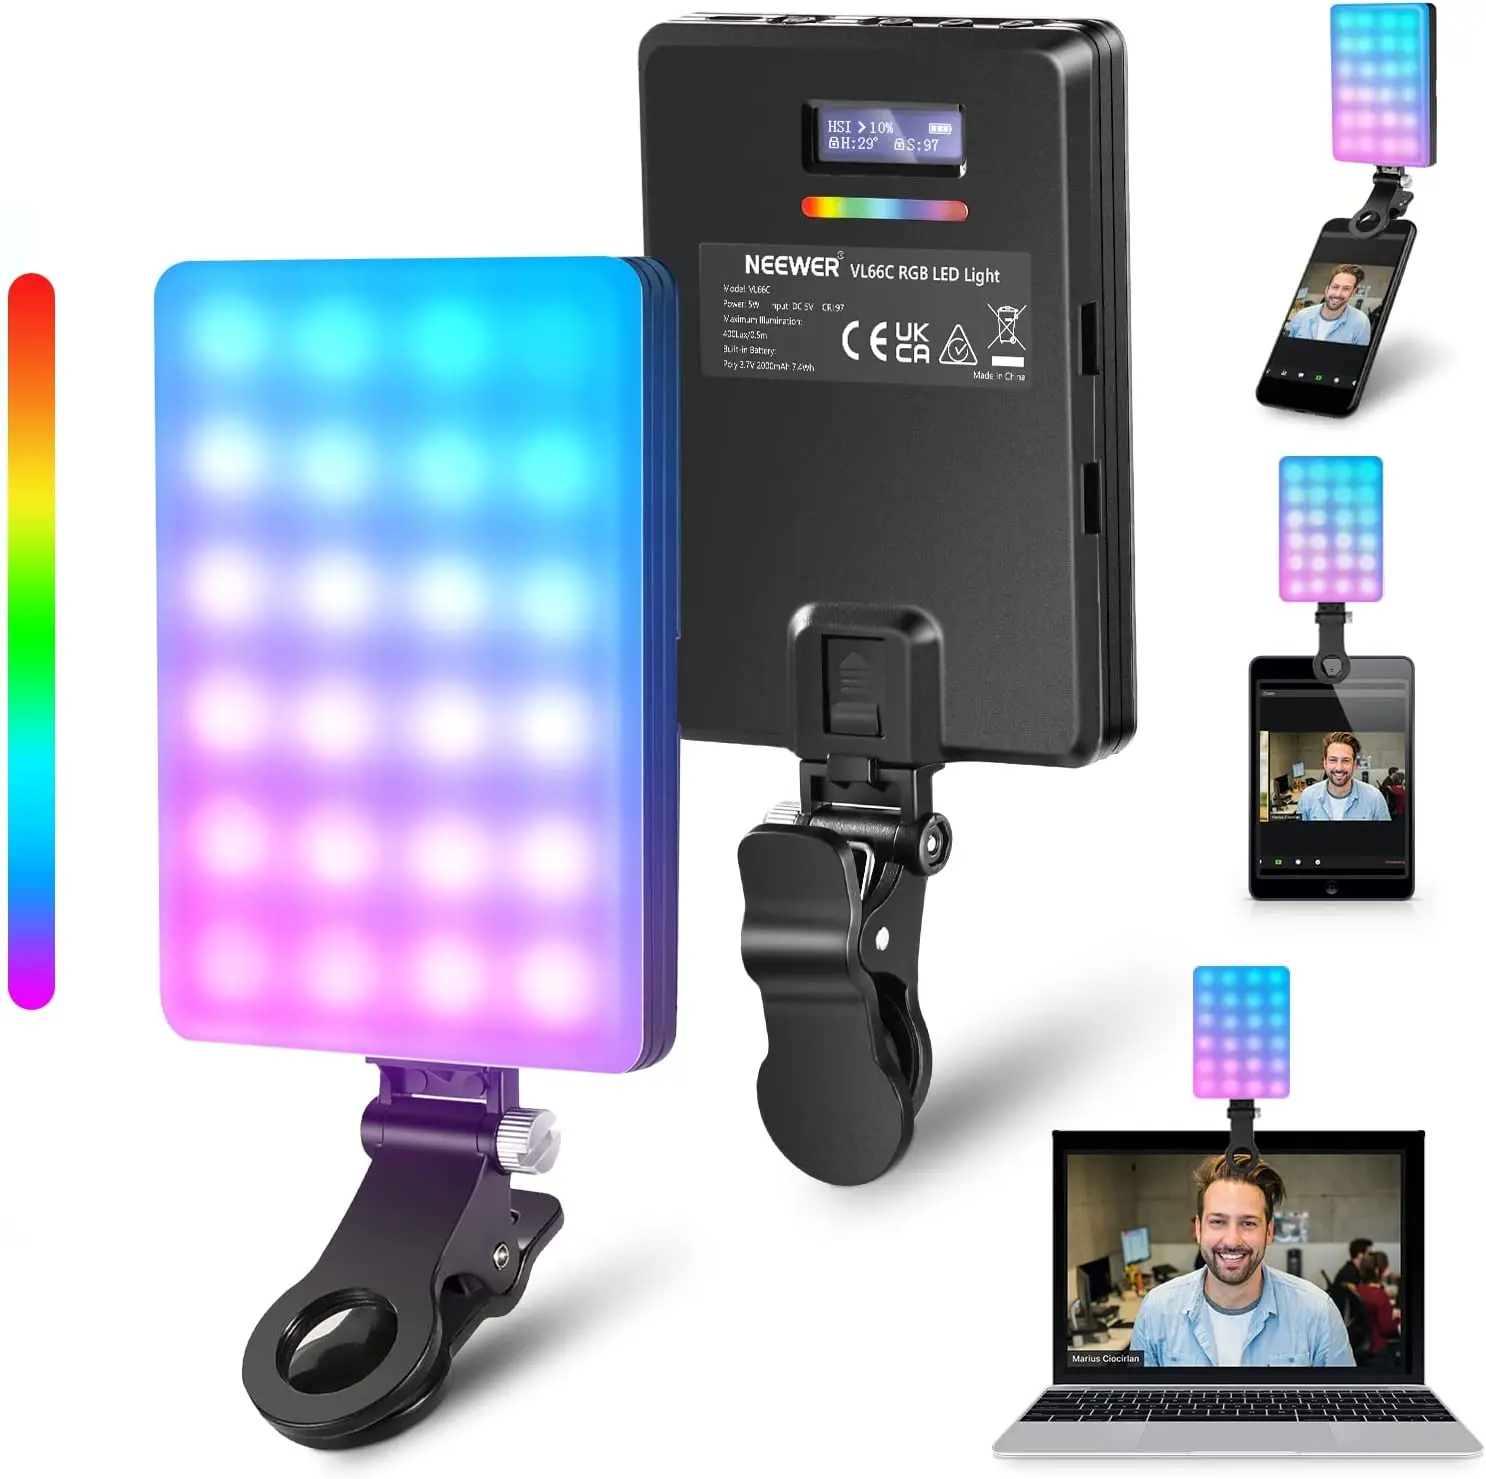 

NEEWER RGB светодиодный с держателем для телефона и встроенным зажимом для телефона/стола/ноутбука/видеоконференции/TikTok/селфи/Vlog/прямой трансляции, VL66